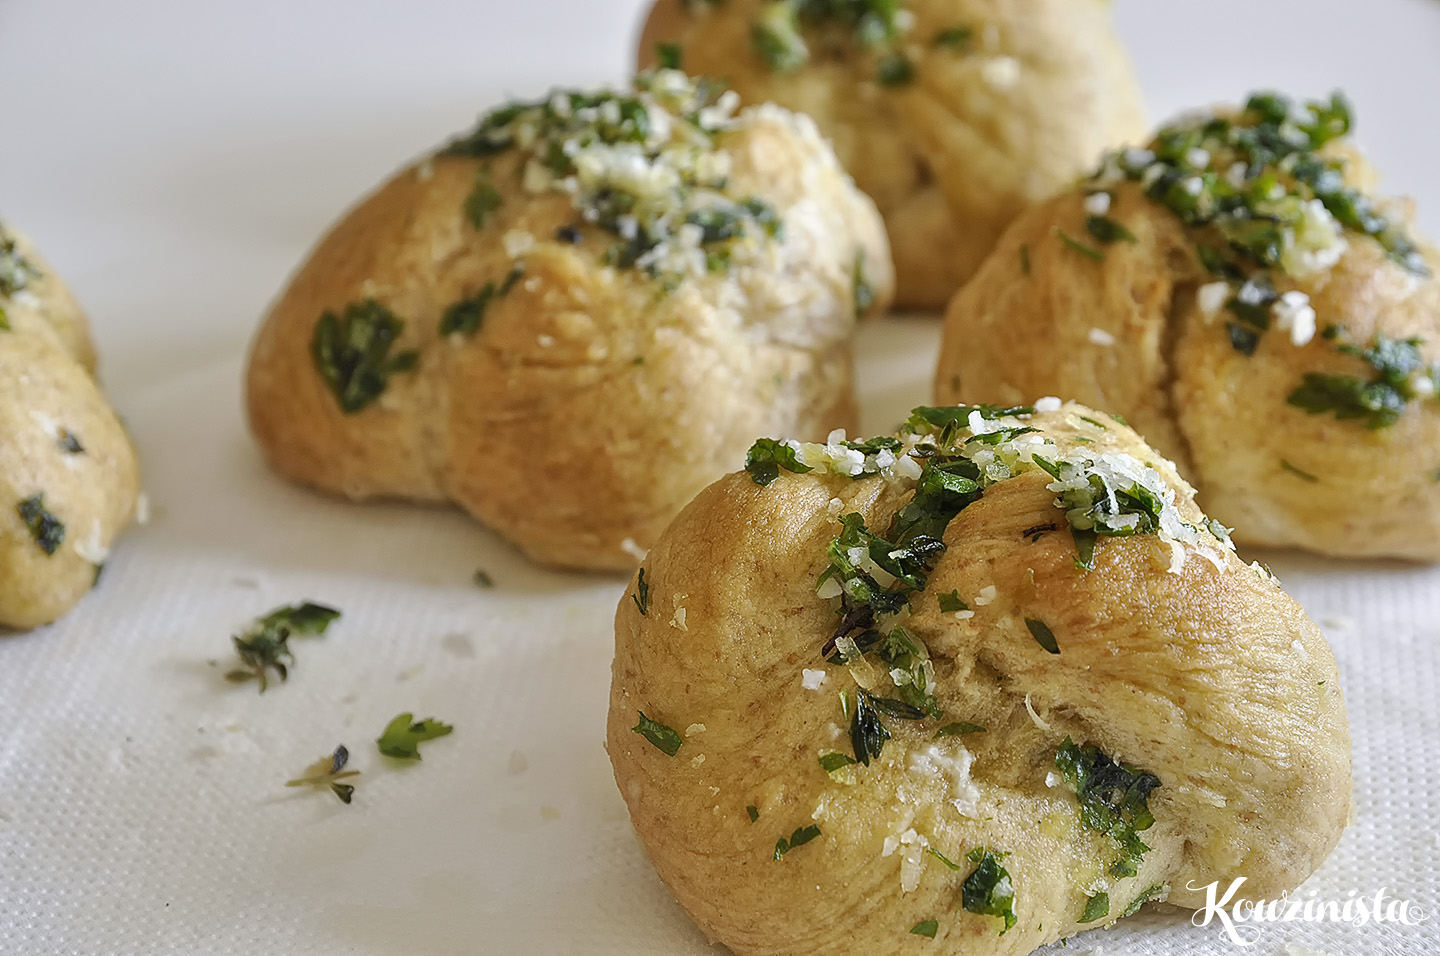 Μυρωδάτα ψωμάκια με σκόρδο / Garlic knots